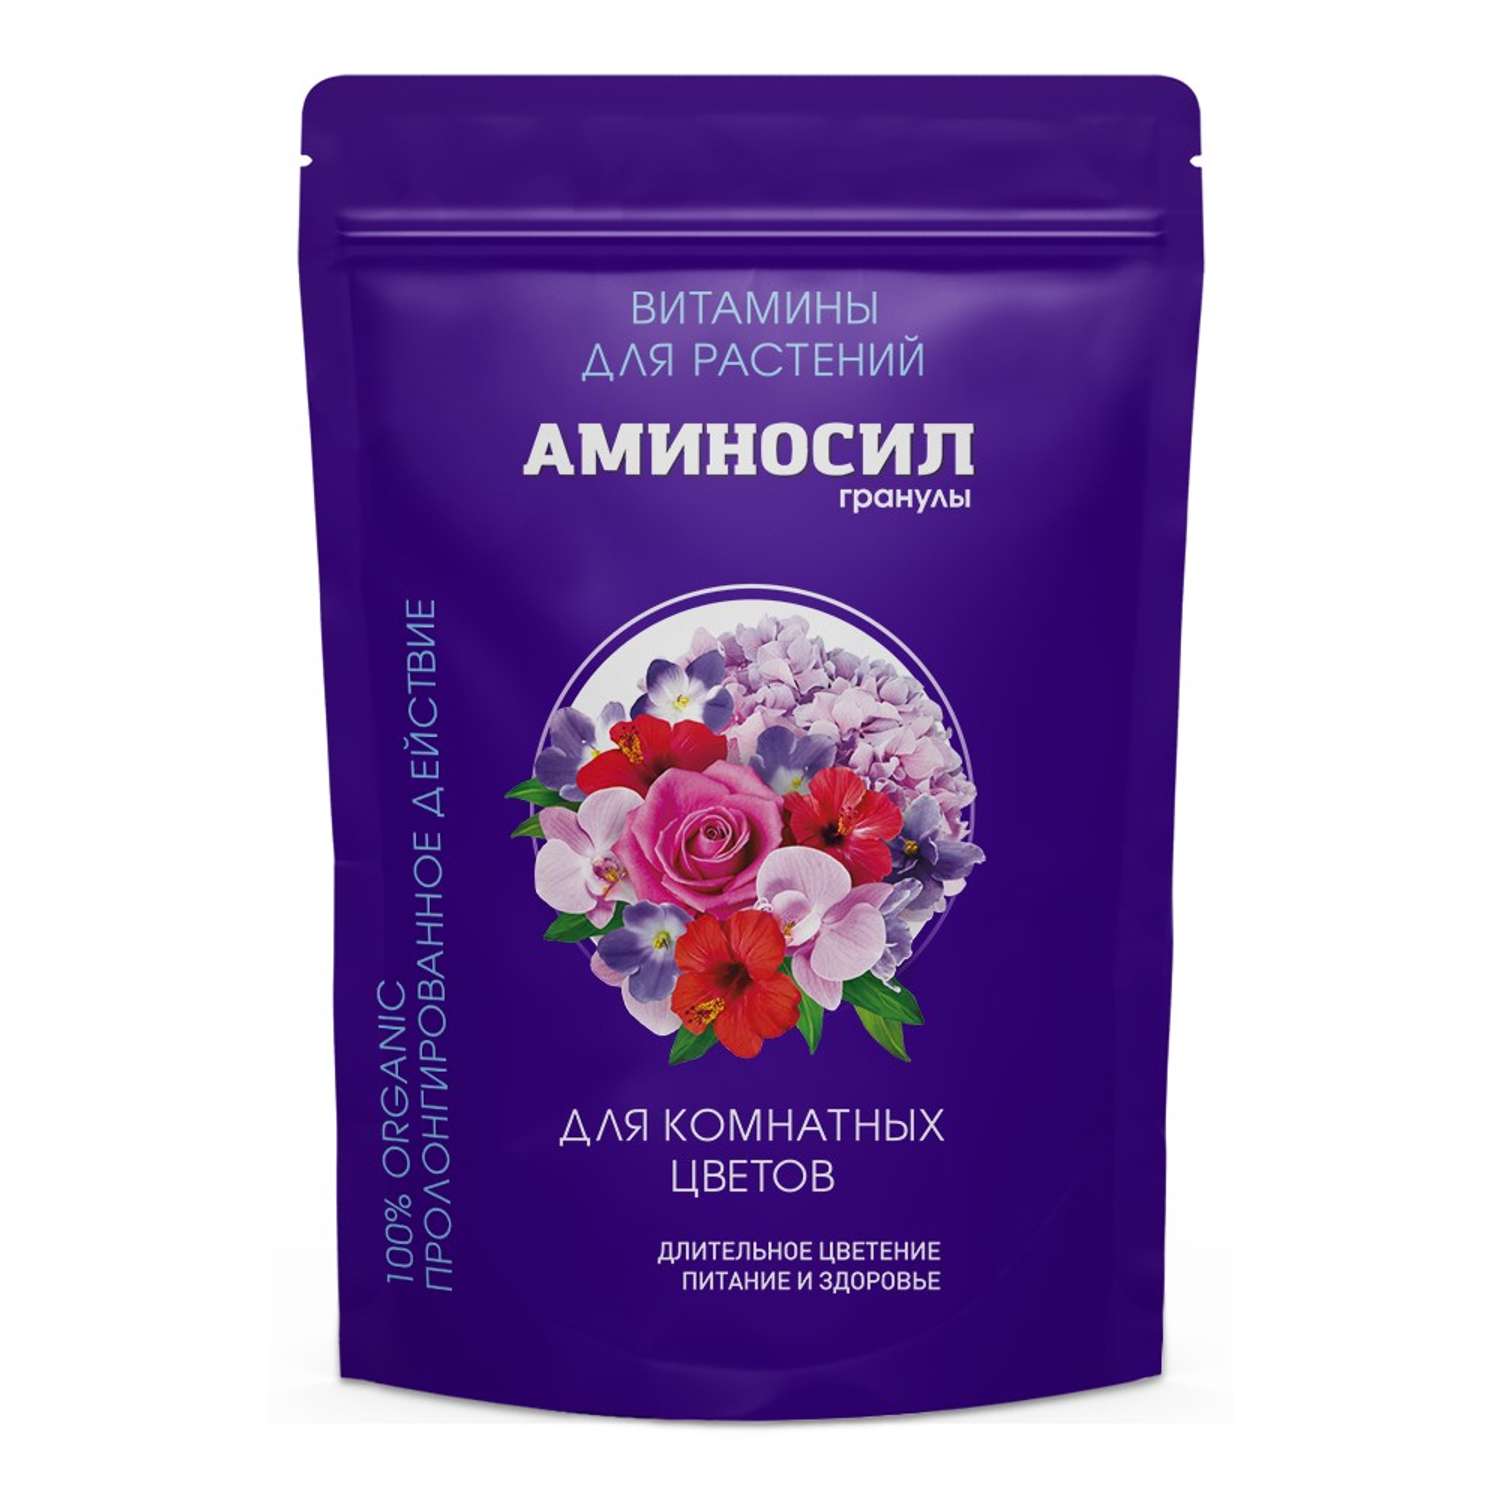 Витамины для комнатных цветов Аминосил гранулы 300 гр - фото 1